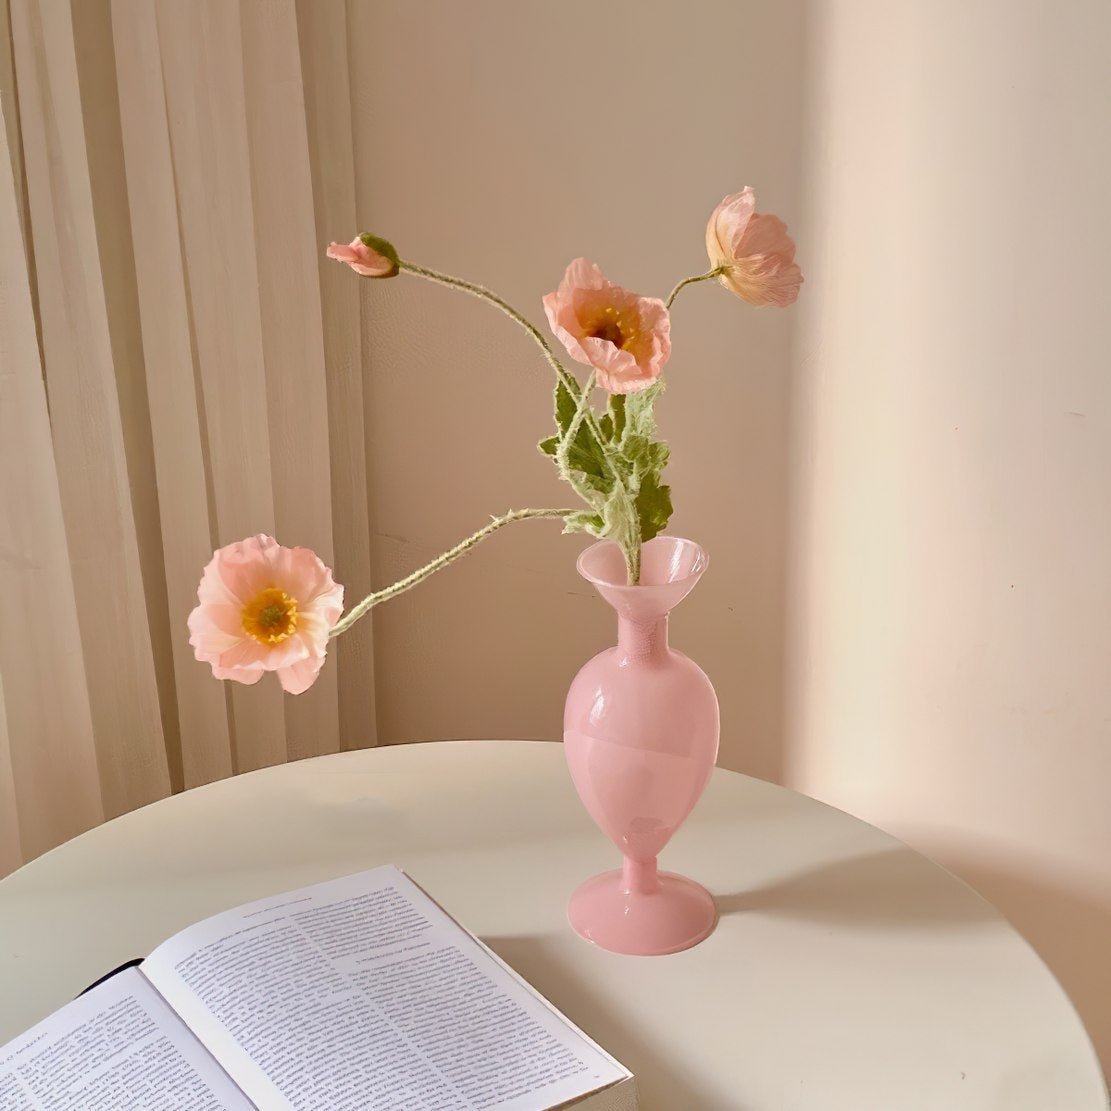 Elegant pink glass romantic flower vase